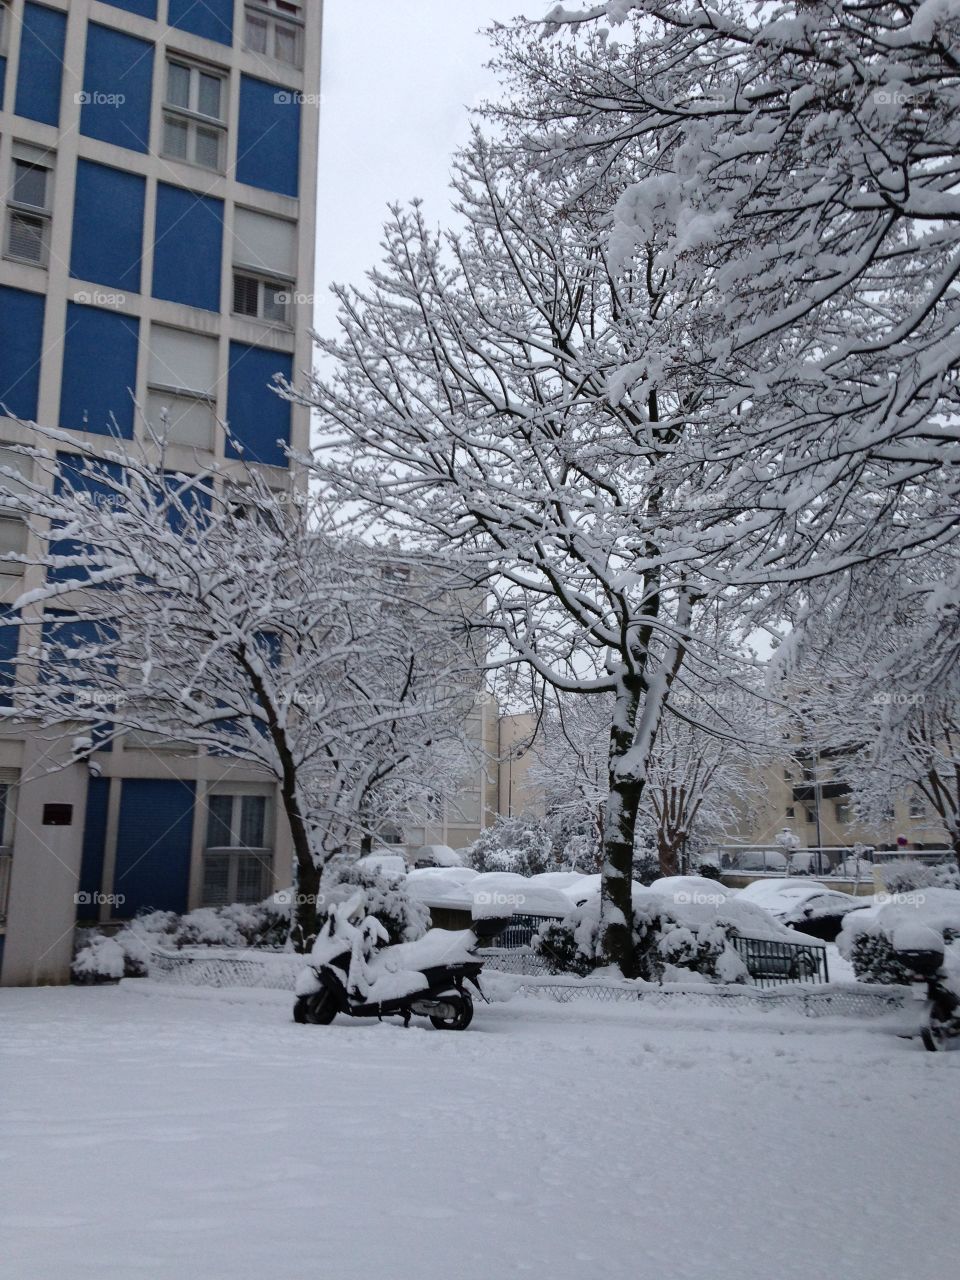 Il neige en France, il neige à Paris. Tout est couvert d'un blanc manteau, froid mais beau... // It's snowing in France, it's snowing in Paris. Everything is under a beautiful but cold white jacket...